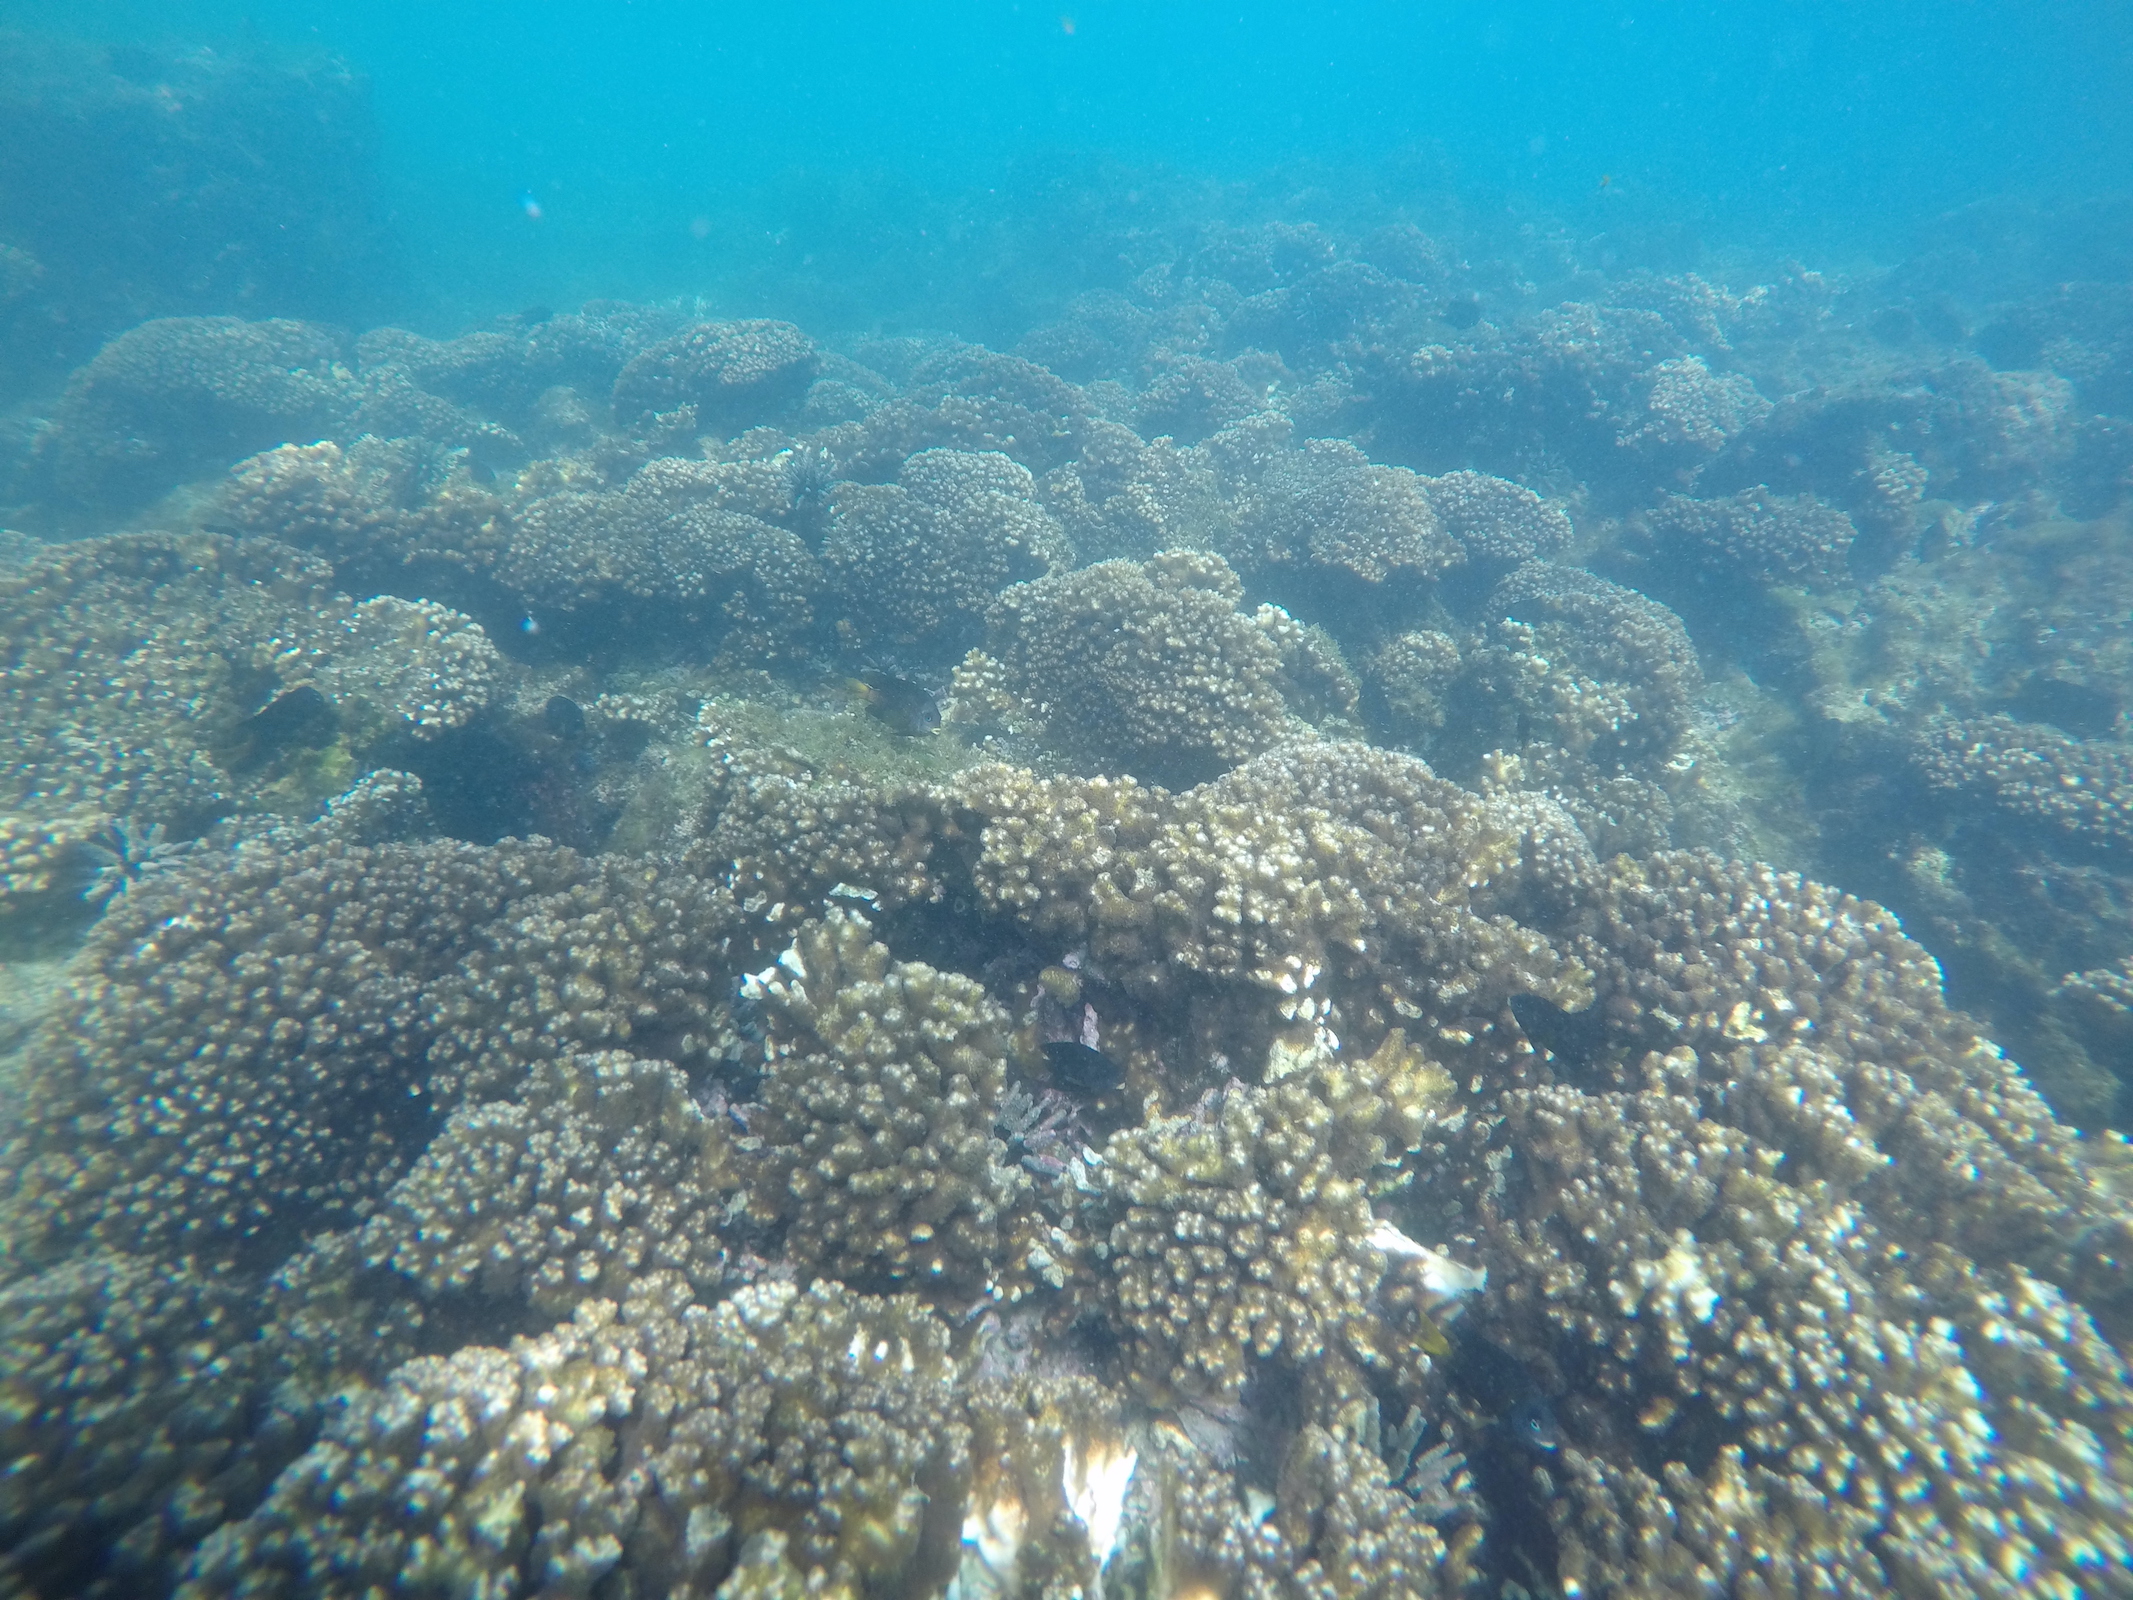 Pocillopora corals are widespread. Pocillopora colonies growing in the lagoon at Concha y Perla, Isla Isabela, Galápagos.